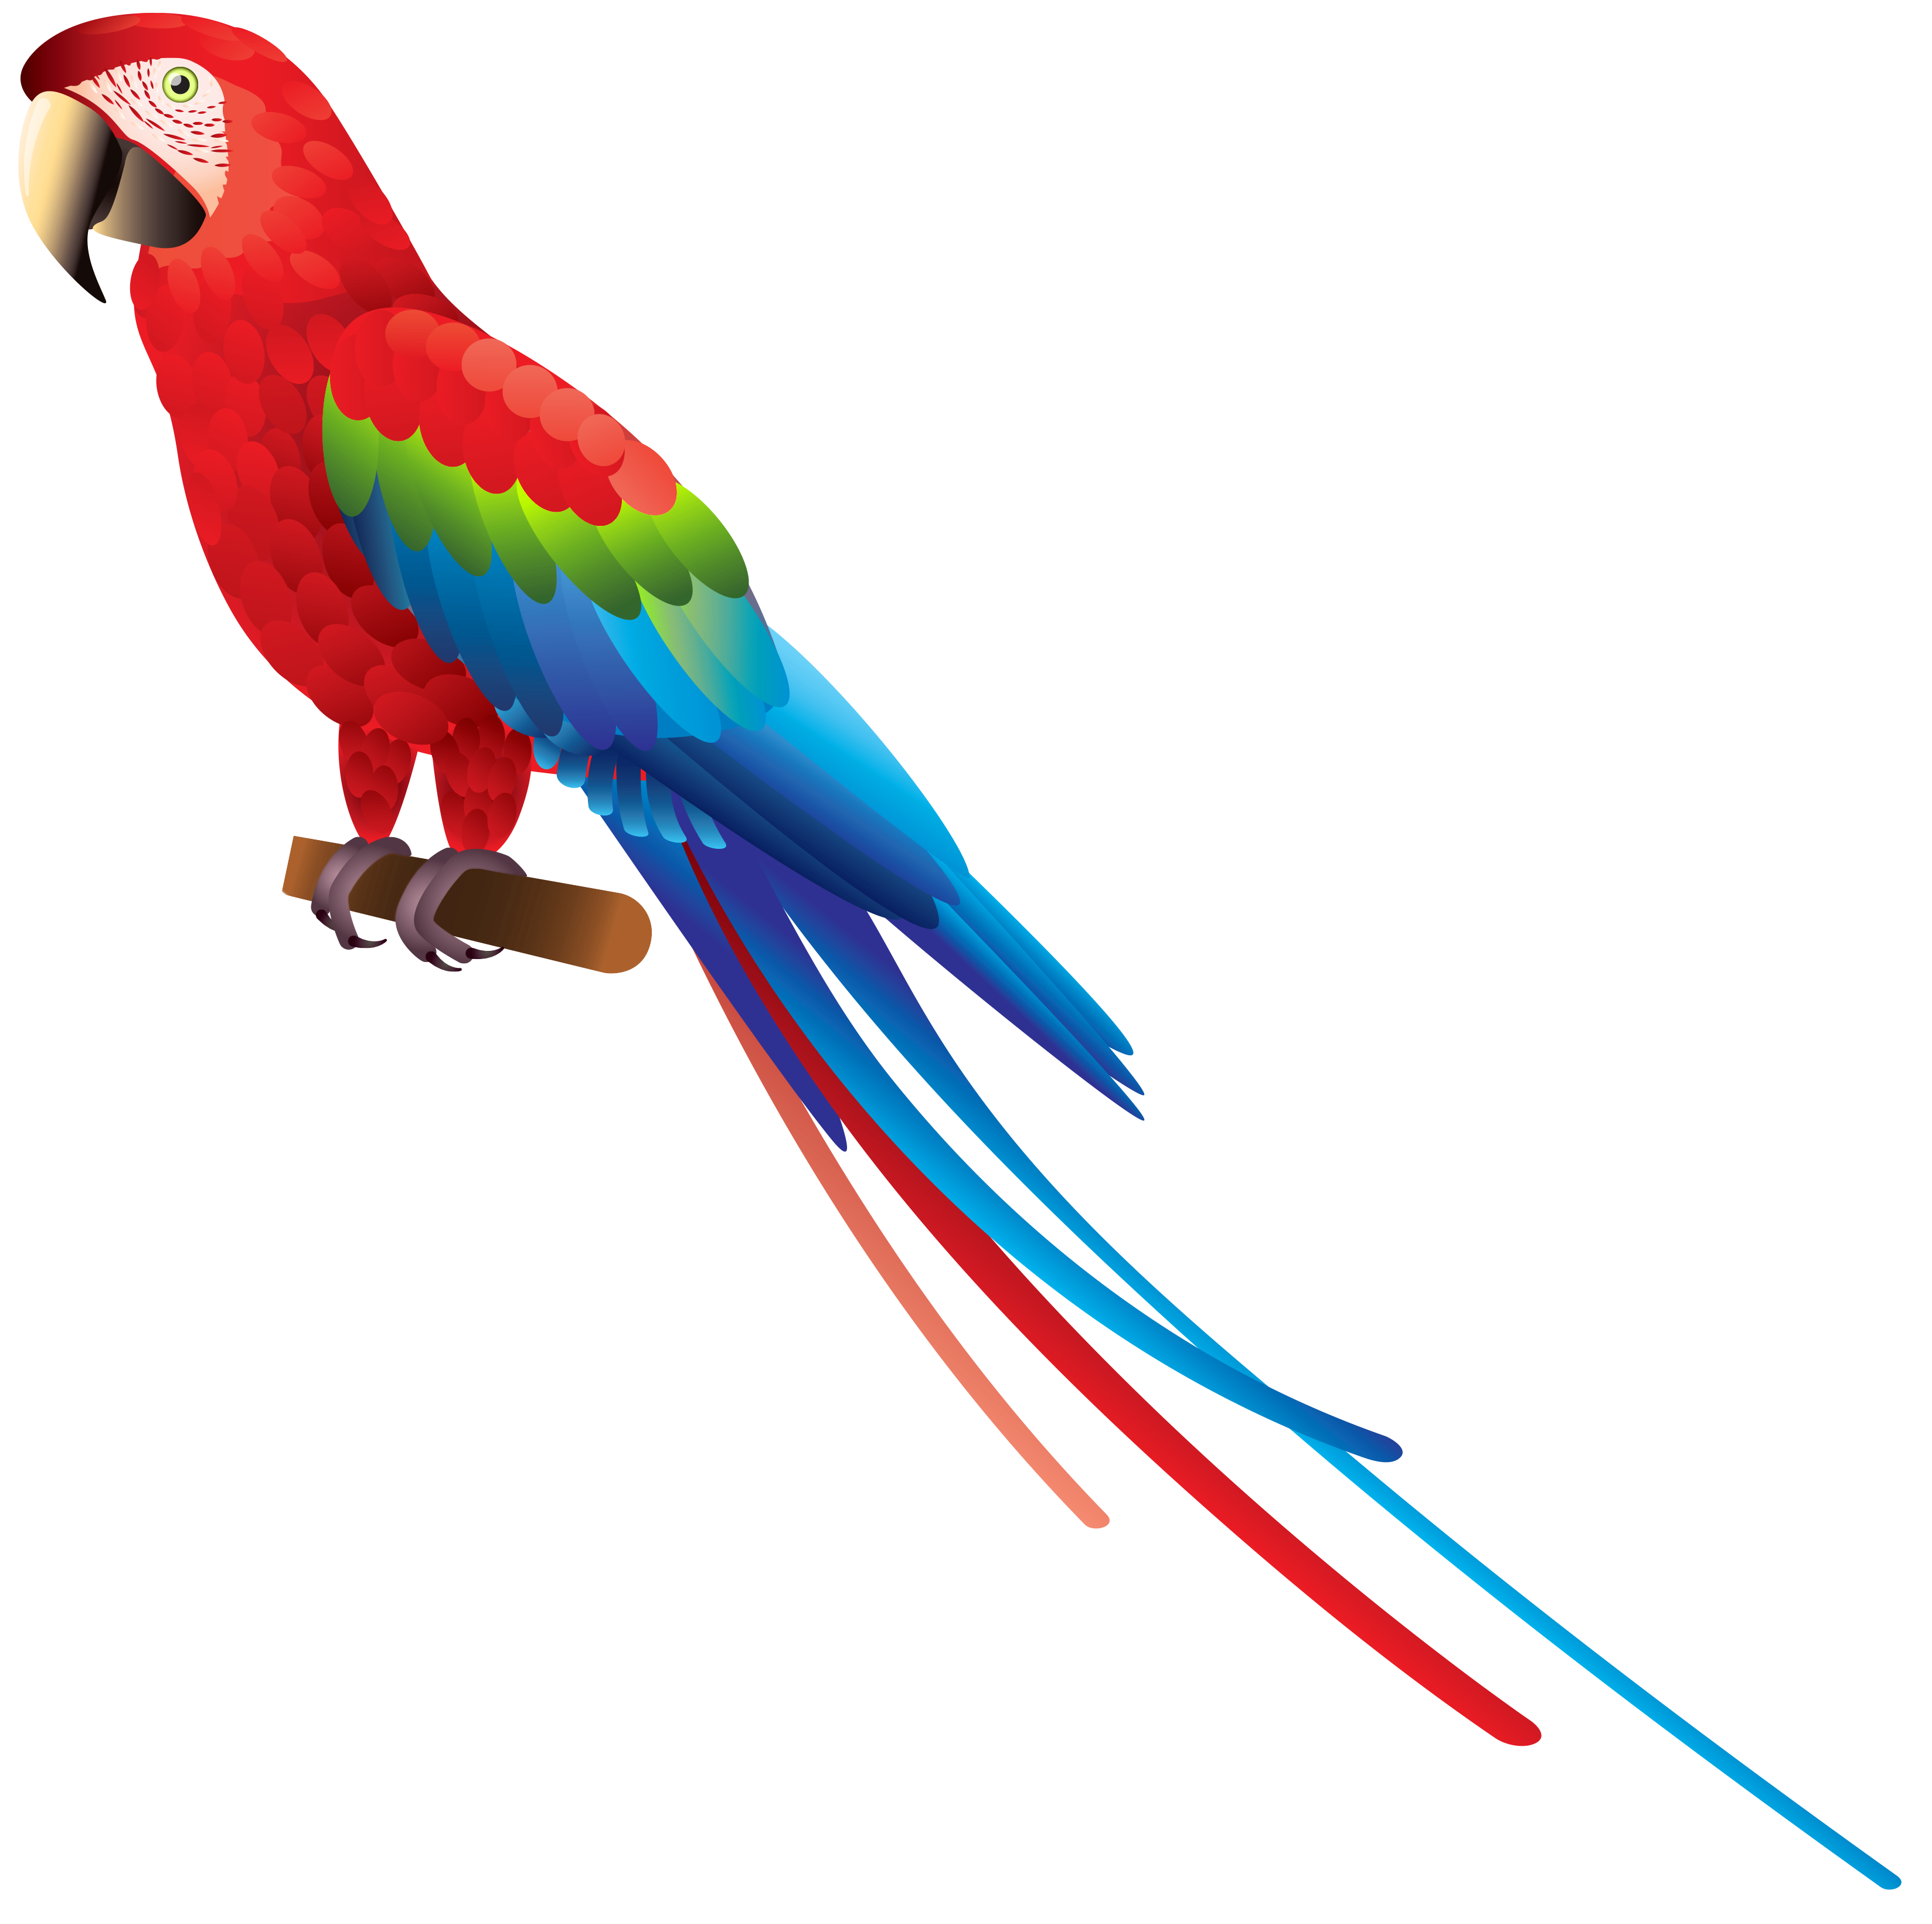 Parrot Bird Clipart